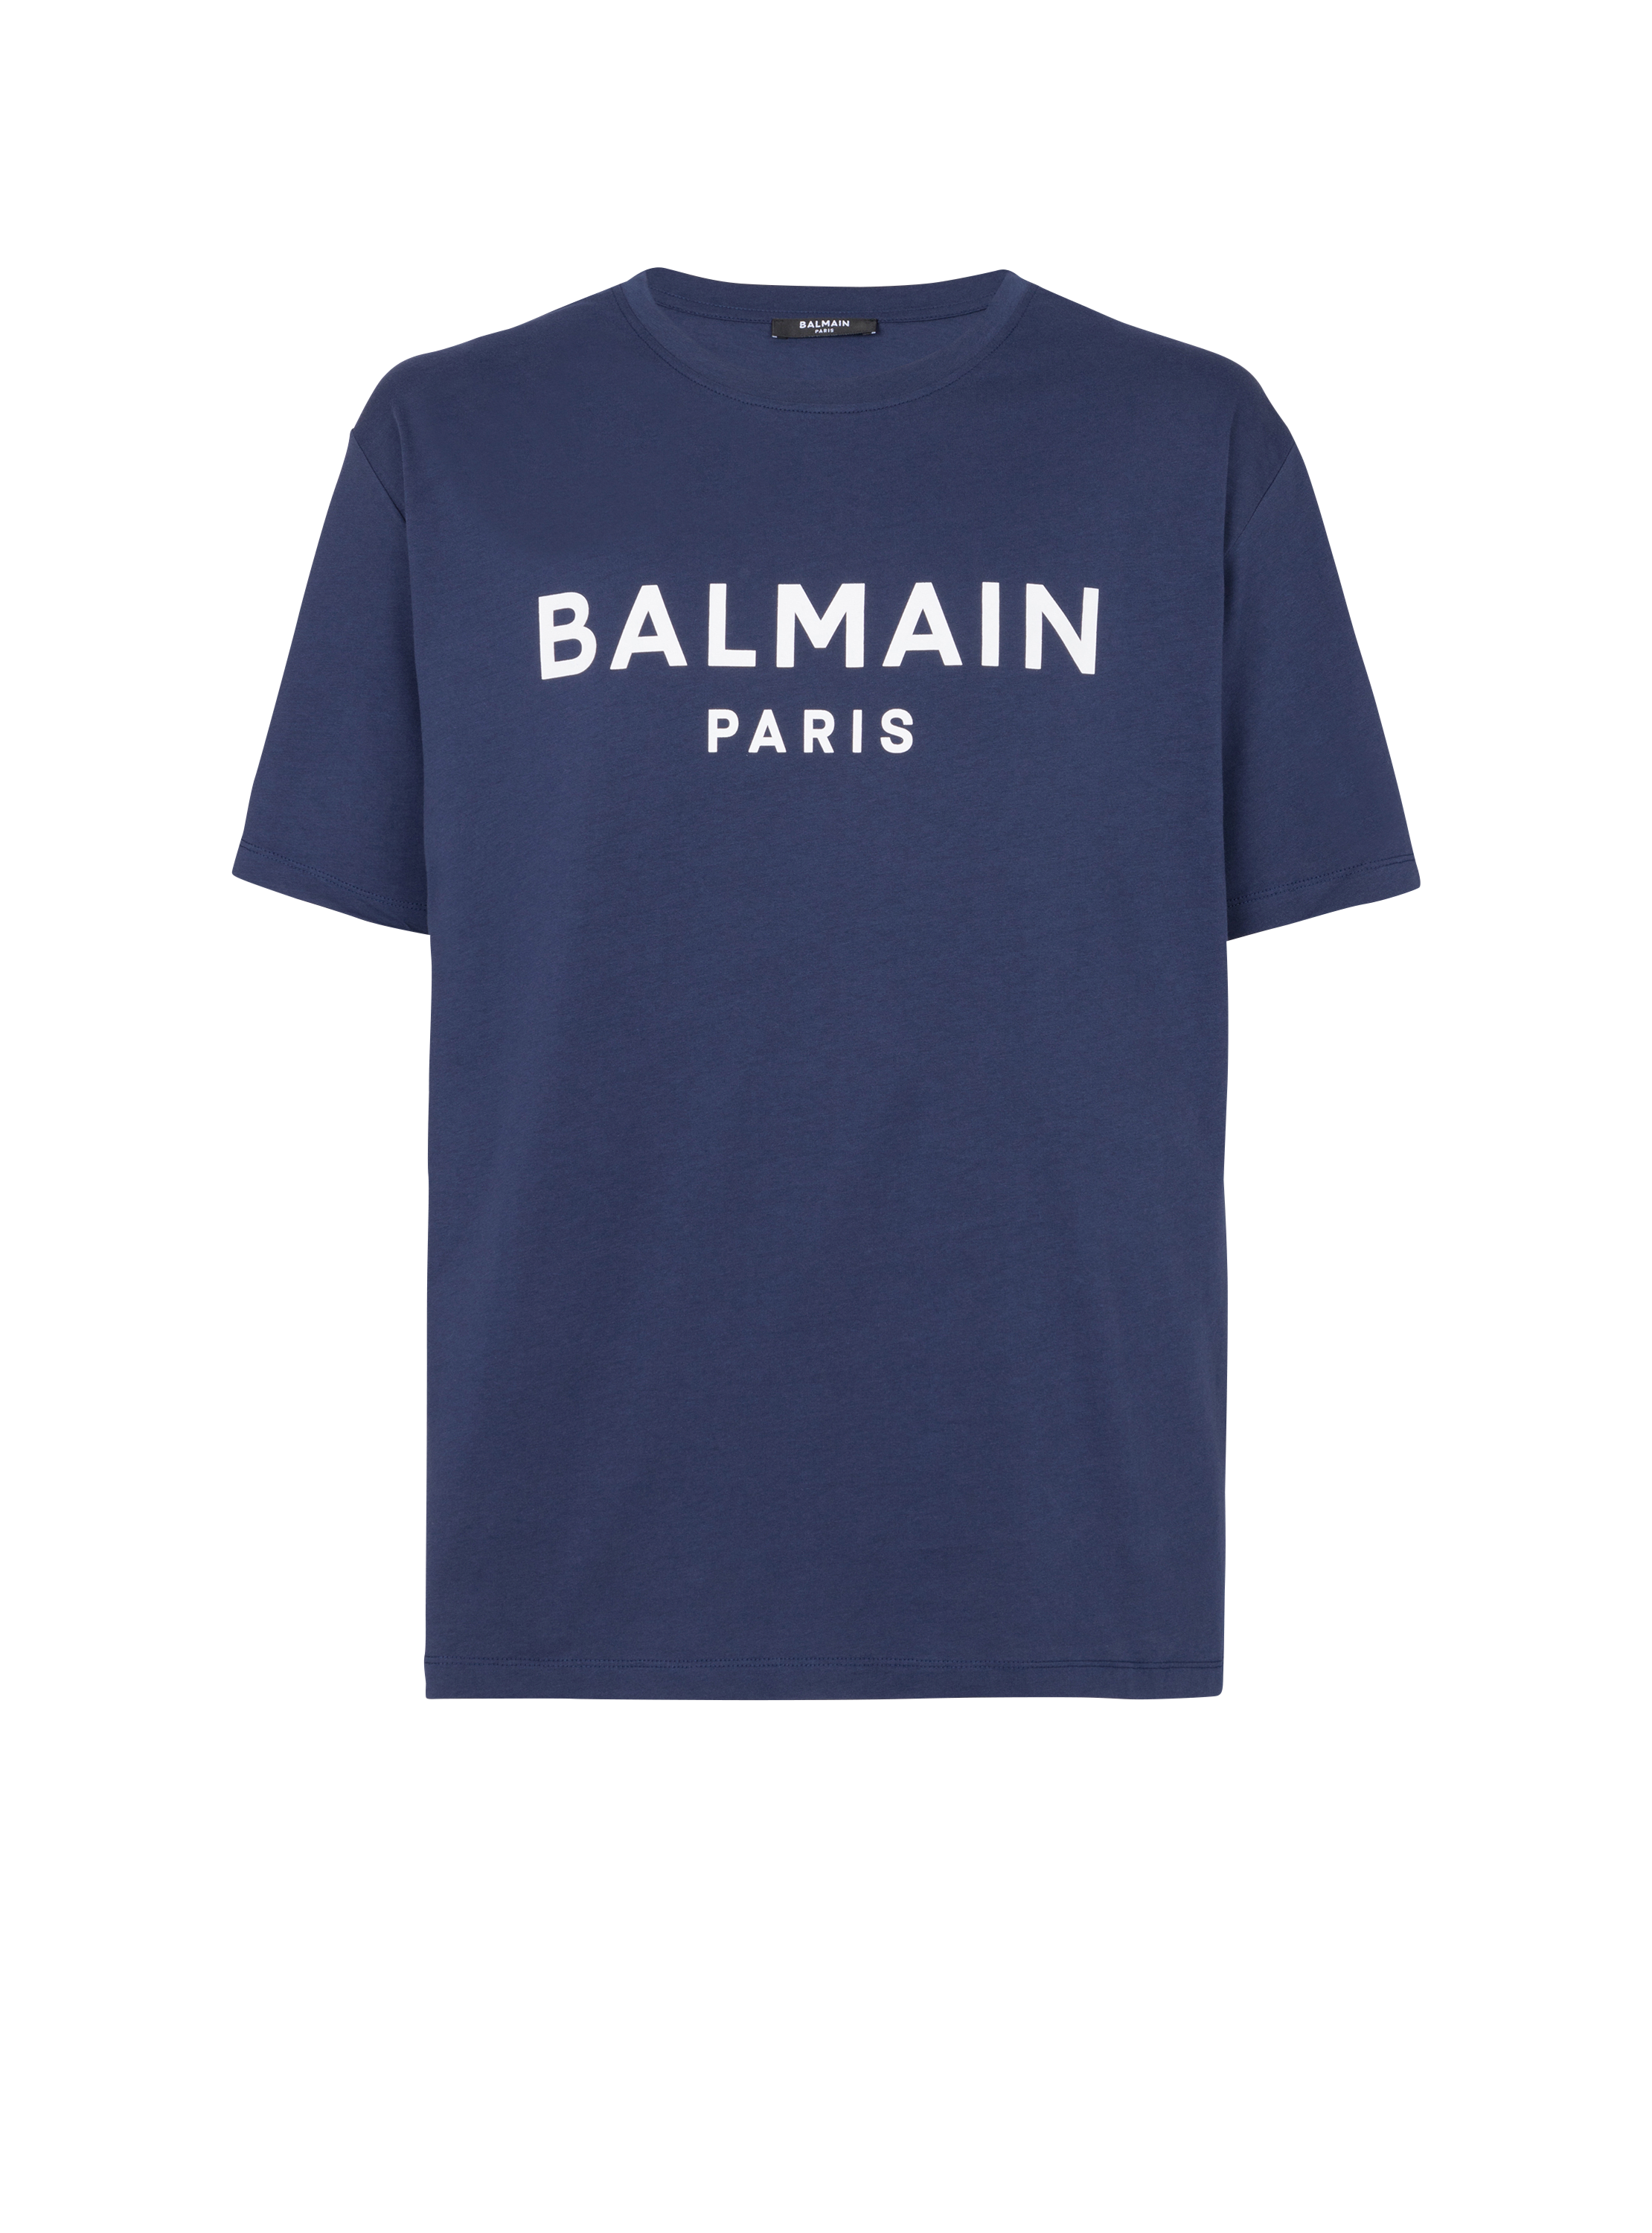 T-shirt Balmain Paris